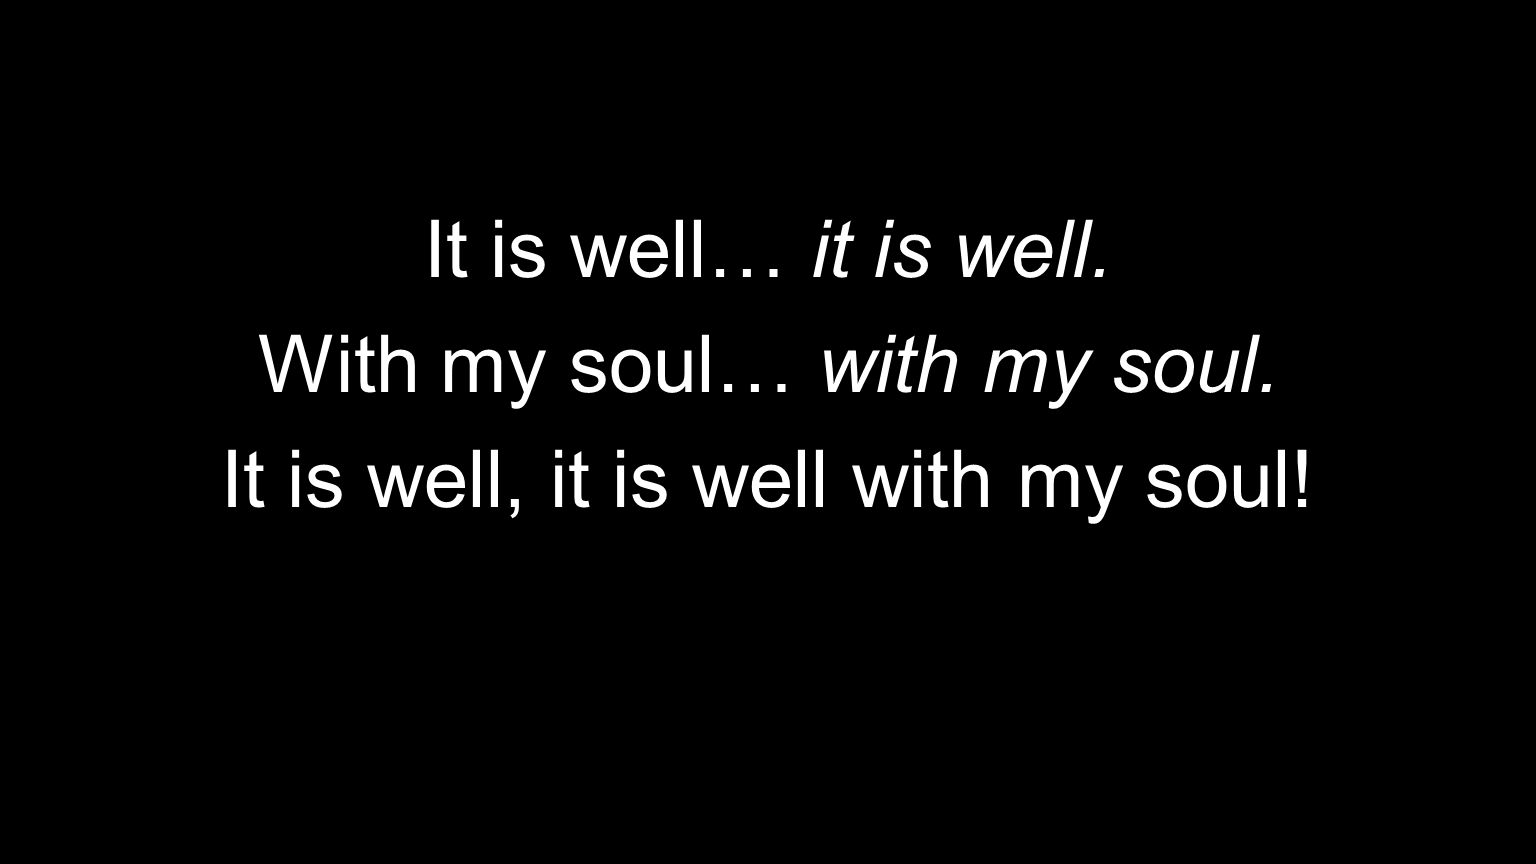 It is well… it is well. With my soul… with my soul. It is well, it is well with my soul!